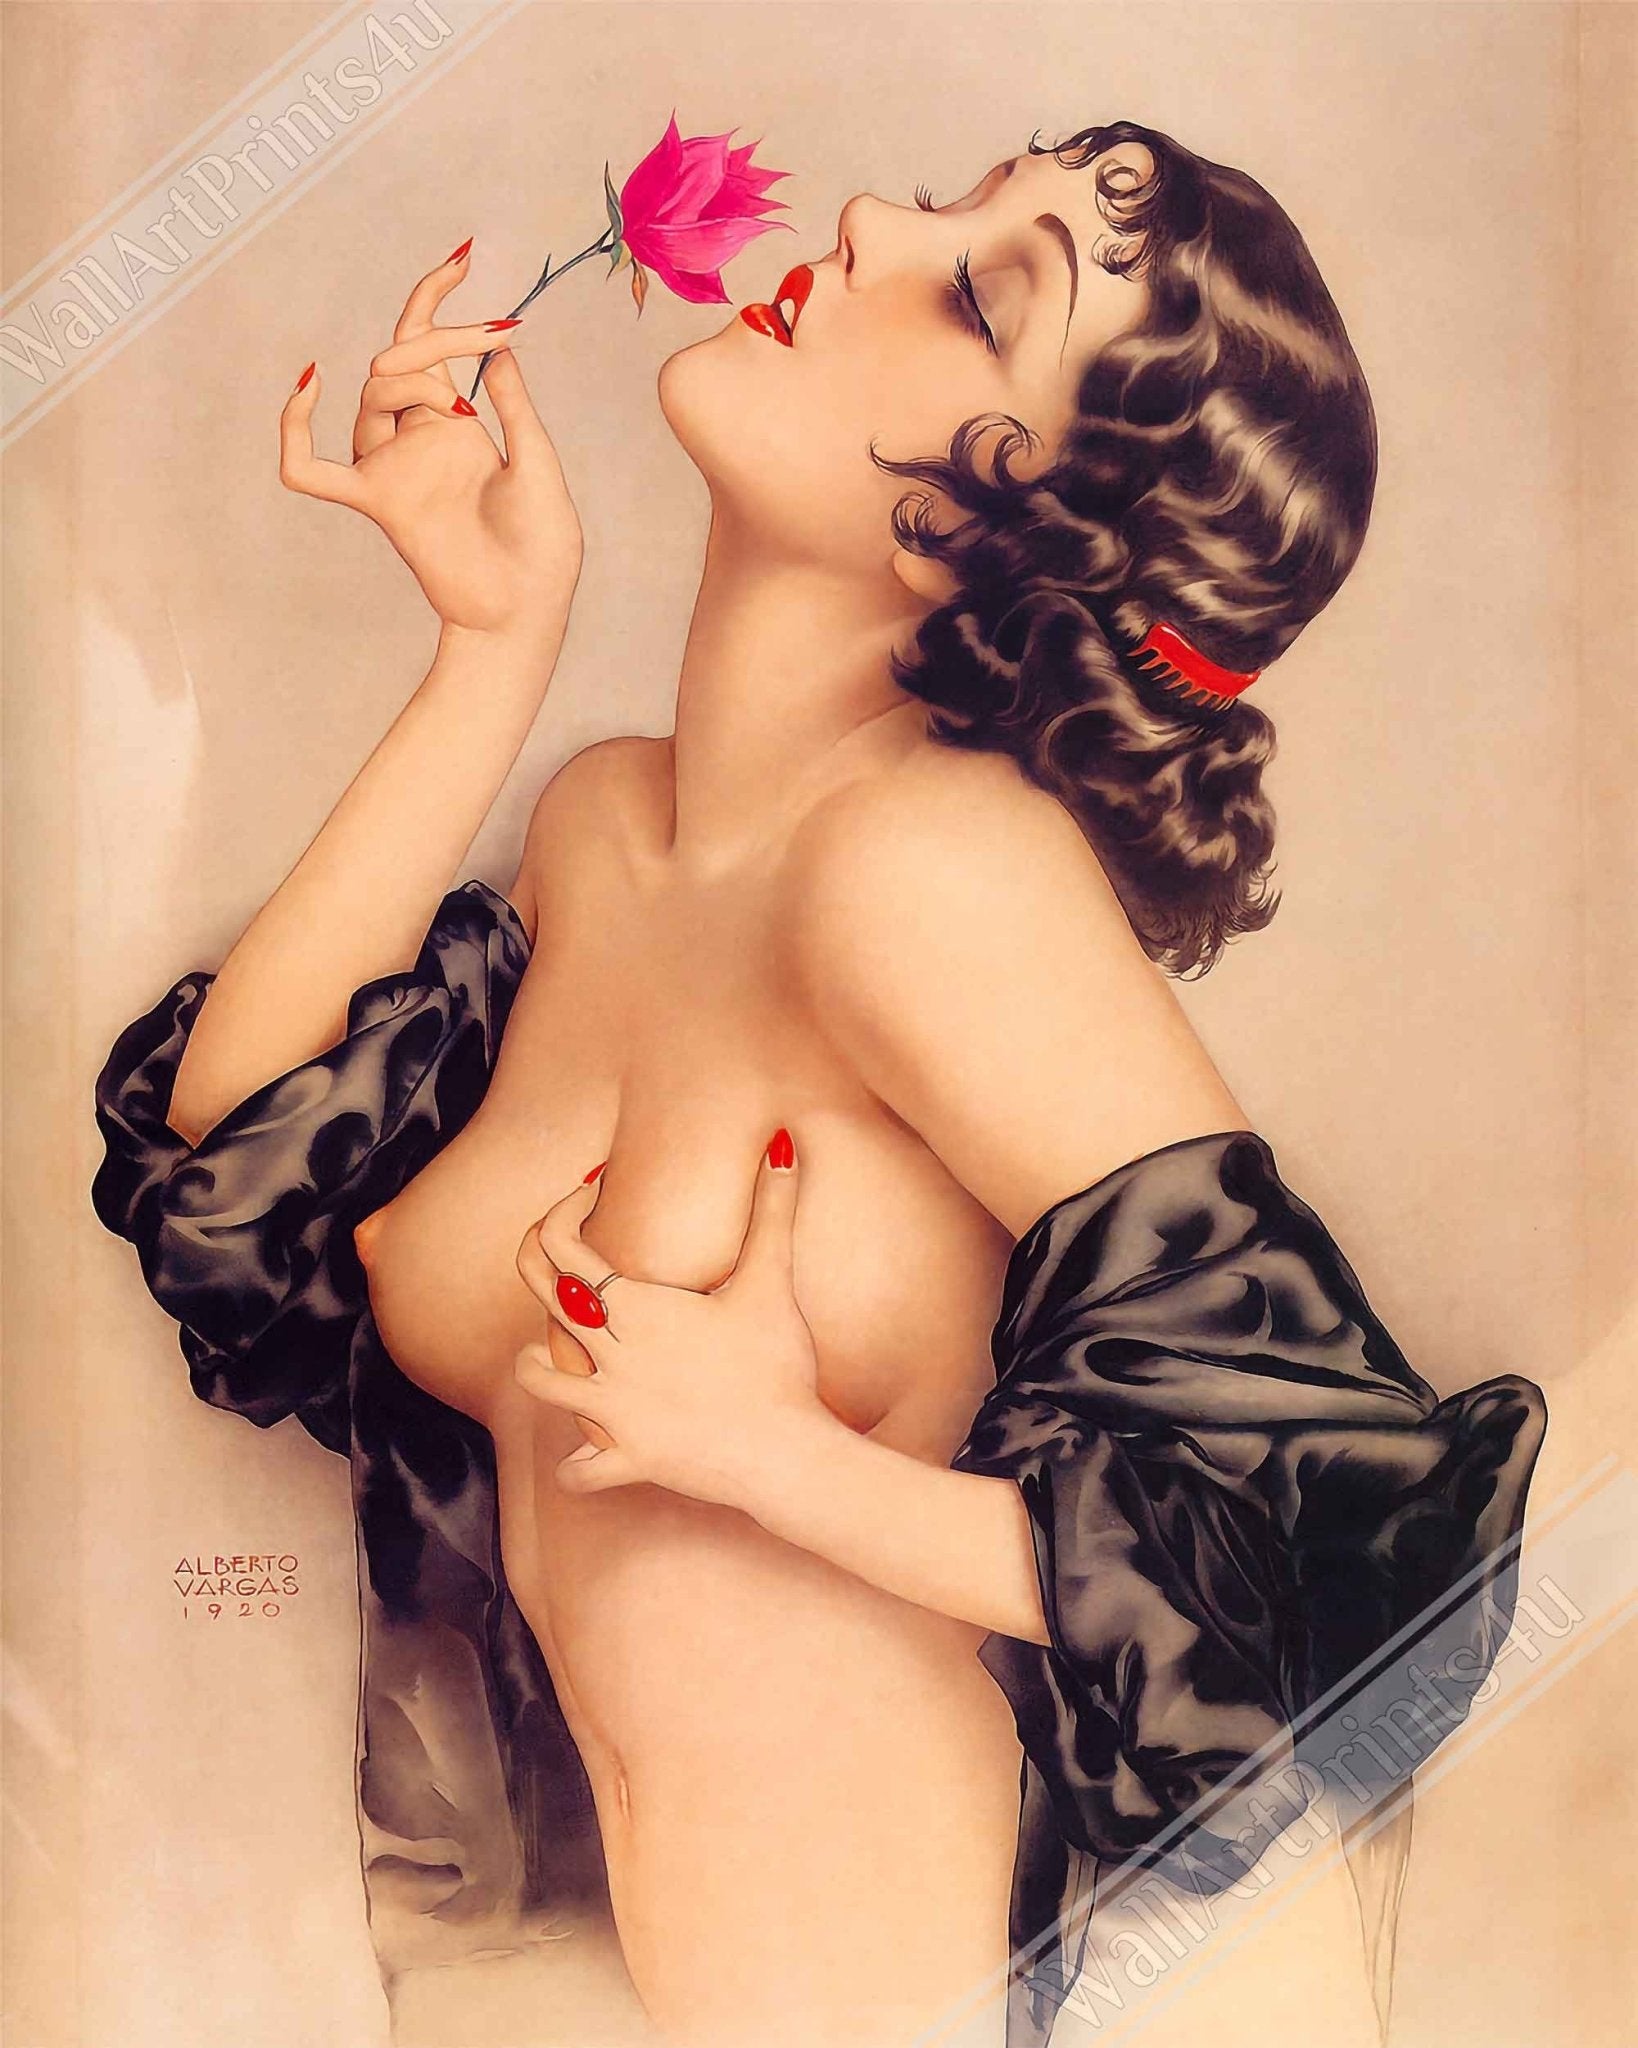 Vintage Pin Up Girl Poster, Alberto Vargas, Olive Thomas Pin Up Retro Print - From 1920 - WallArtPrints4U